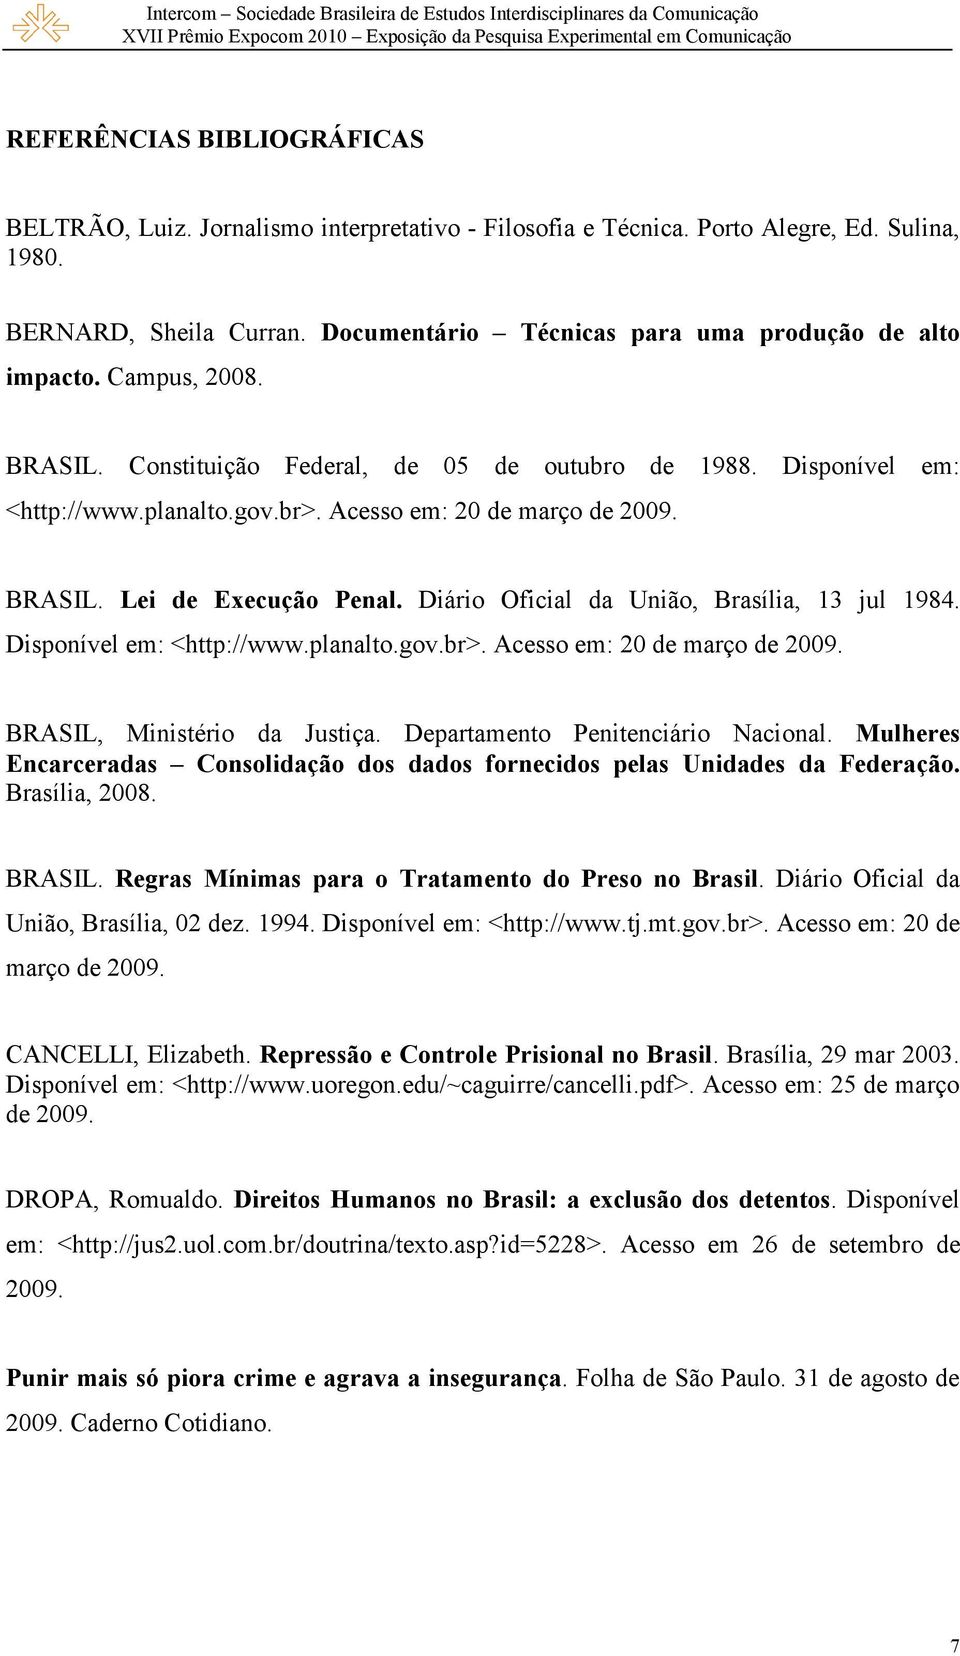 Acesso em: 20 de março de 2009. BRASIL. Lei de Execução Penal. Diário Oficial da União, Brasília, 13 jul 1984. Disponível em: <http://www.planalto.gov.br>. Acesso em: 20 de março de 2009.